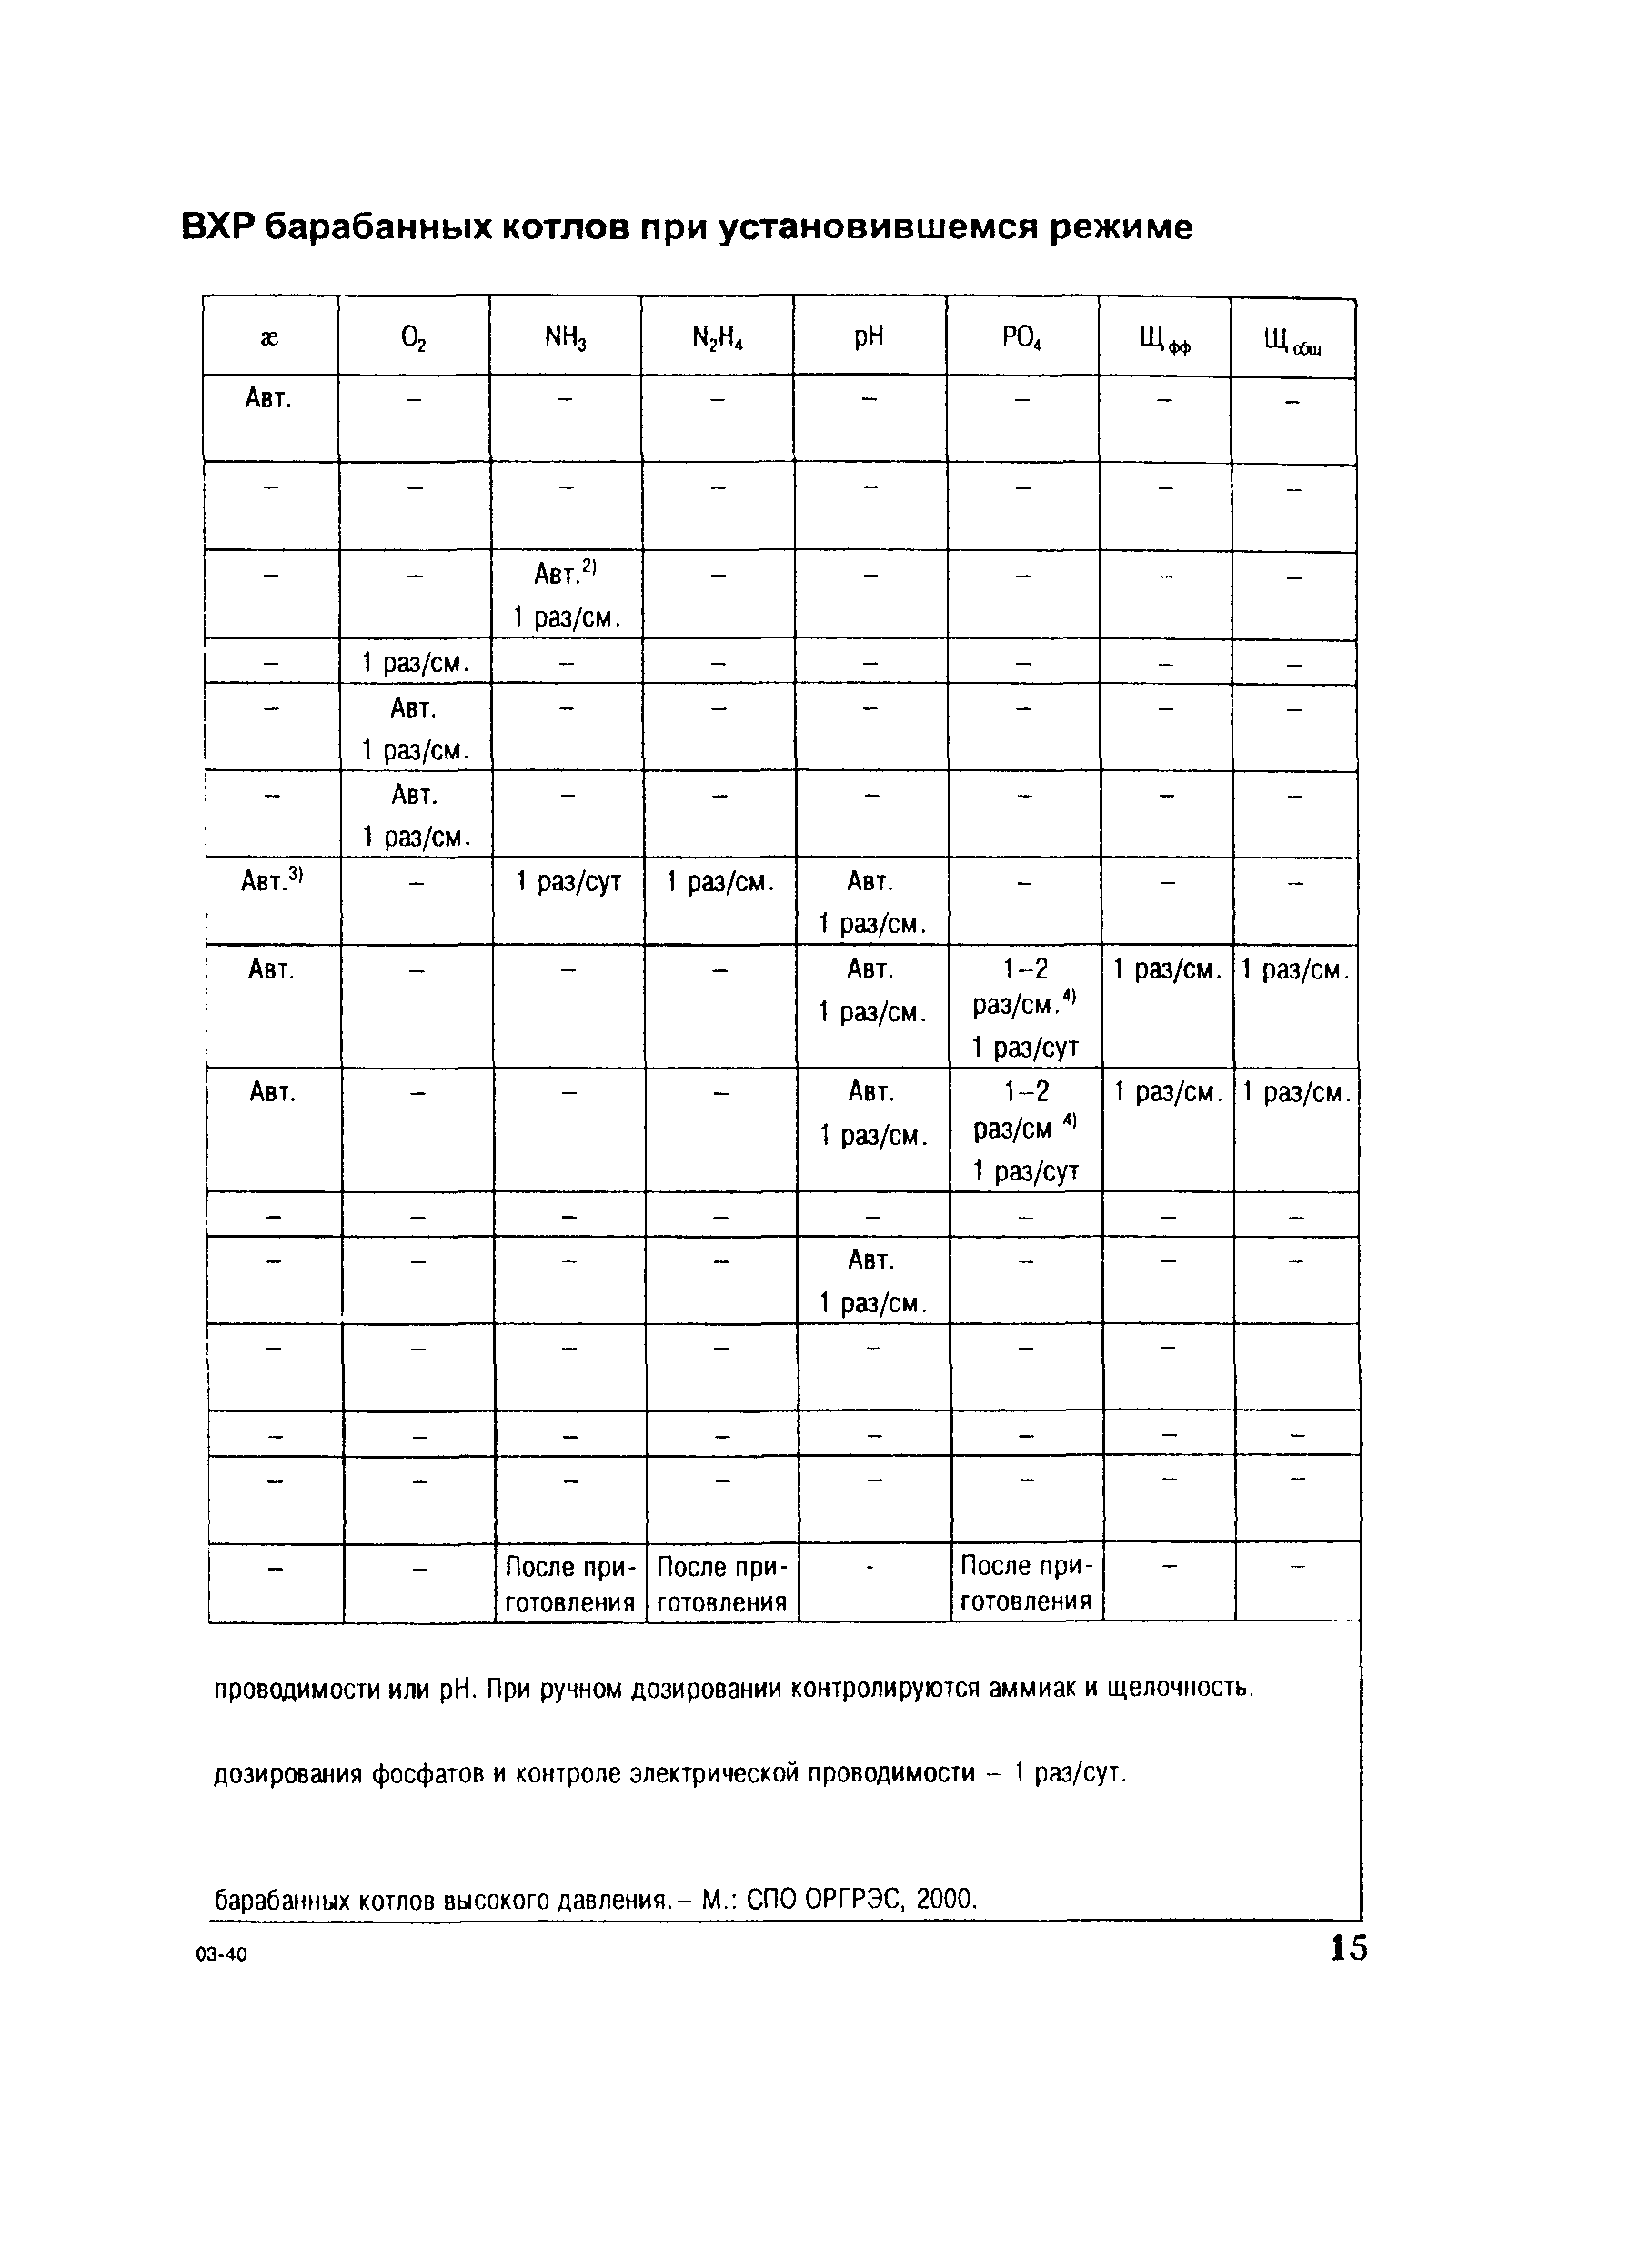 СО 153-34.37.303-2003